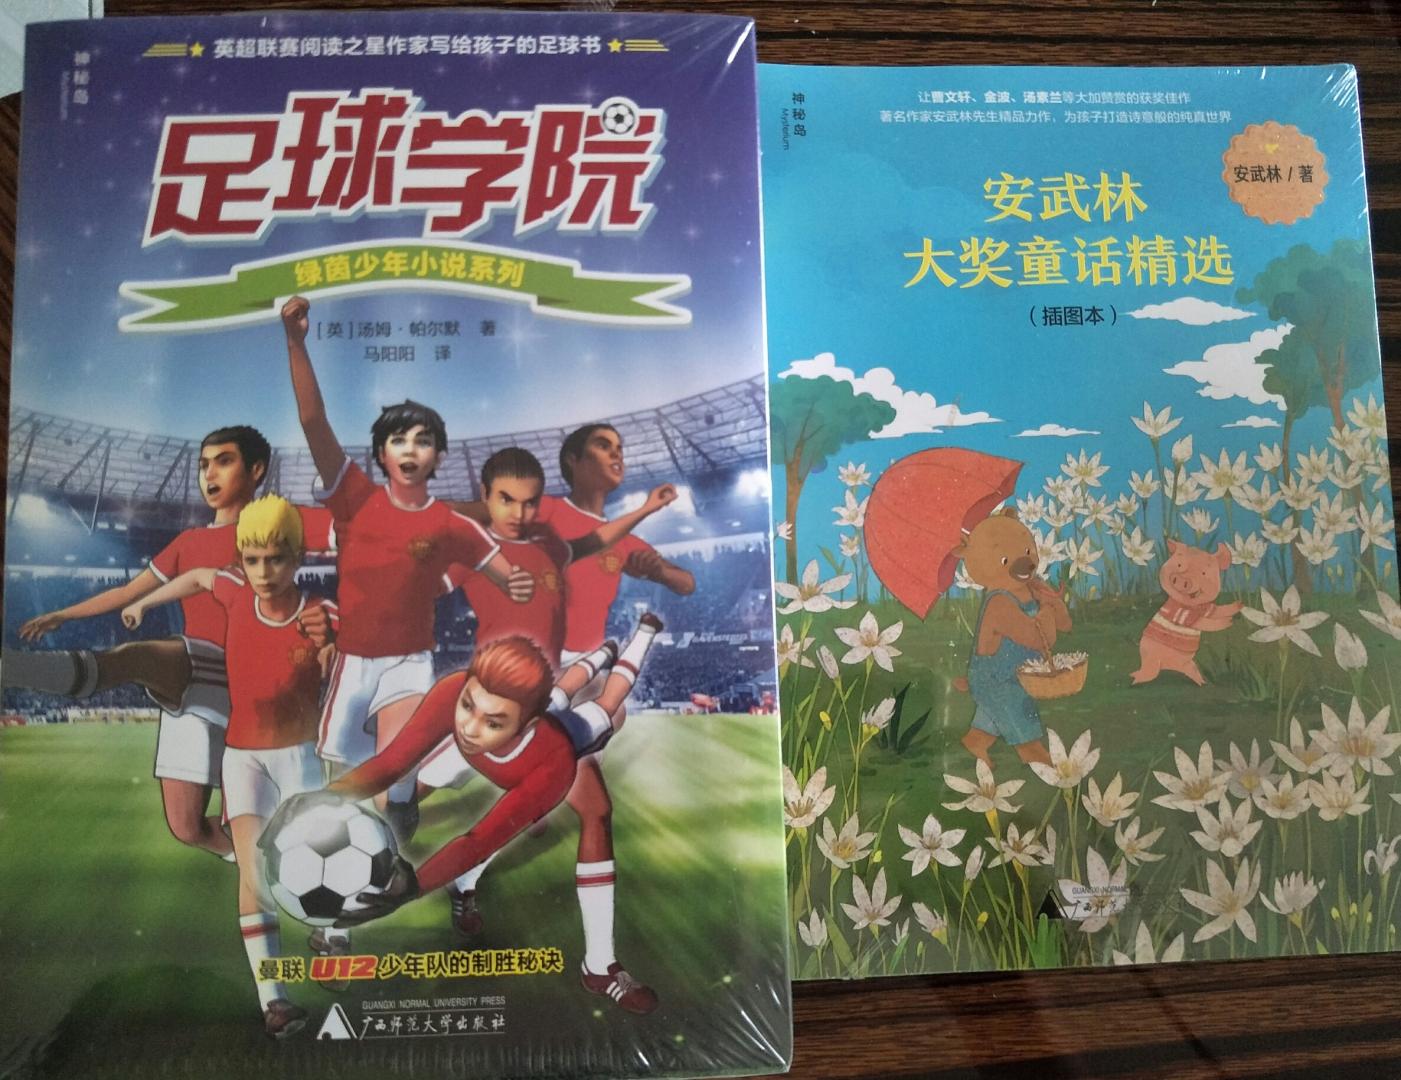 图书是六一儿童节送给孩子最好的礼物，所以下单了两套广师大的少儿作品。这套足球小说适合送给喜欢足球运动的孩子。故事生动，插画有趣。期待更多优秀的足球小说。